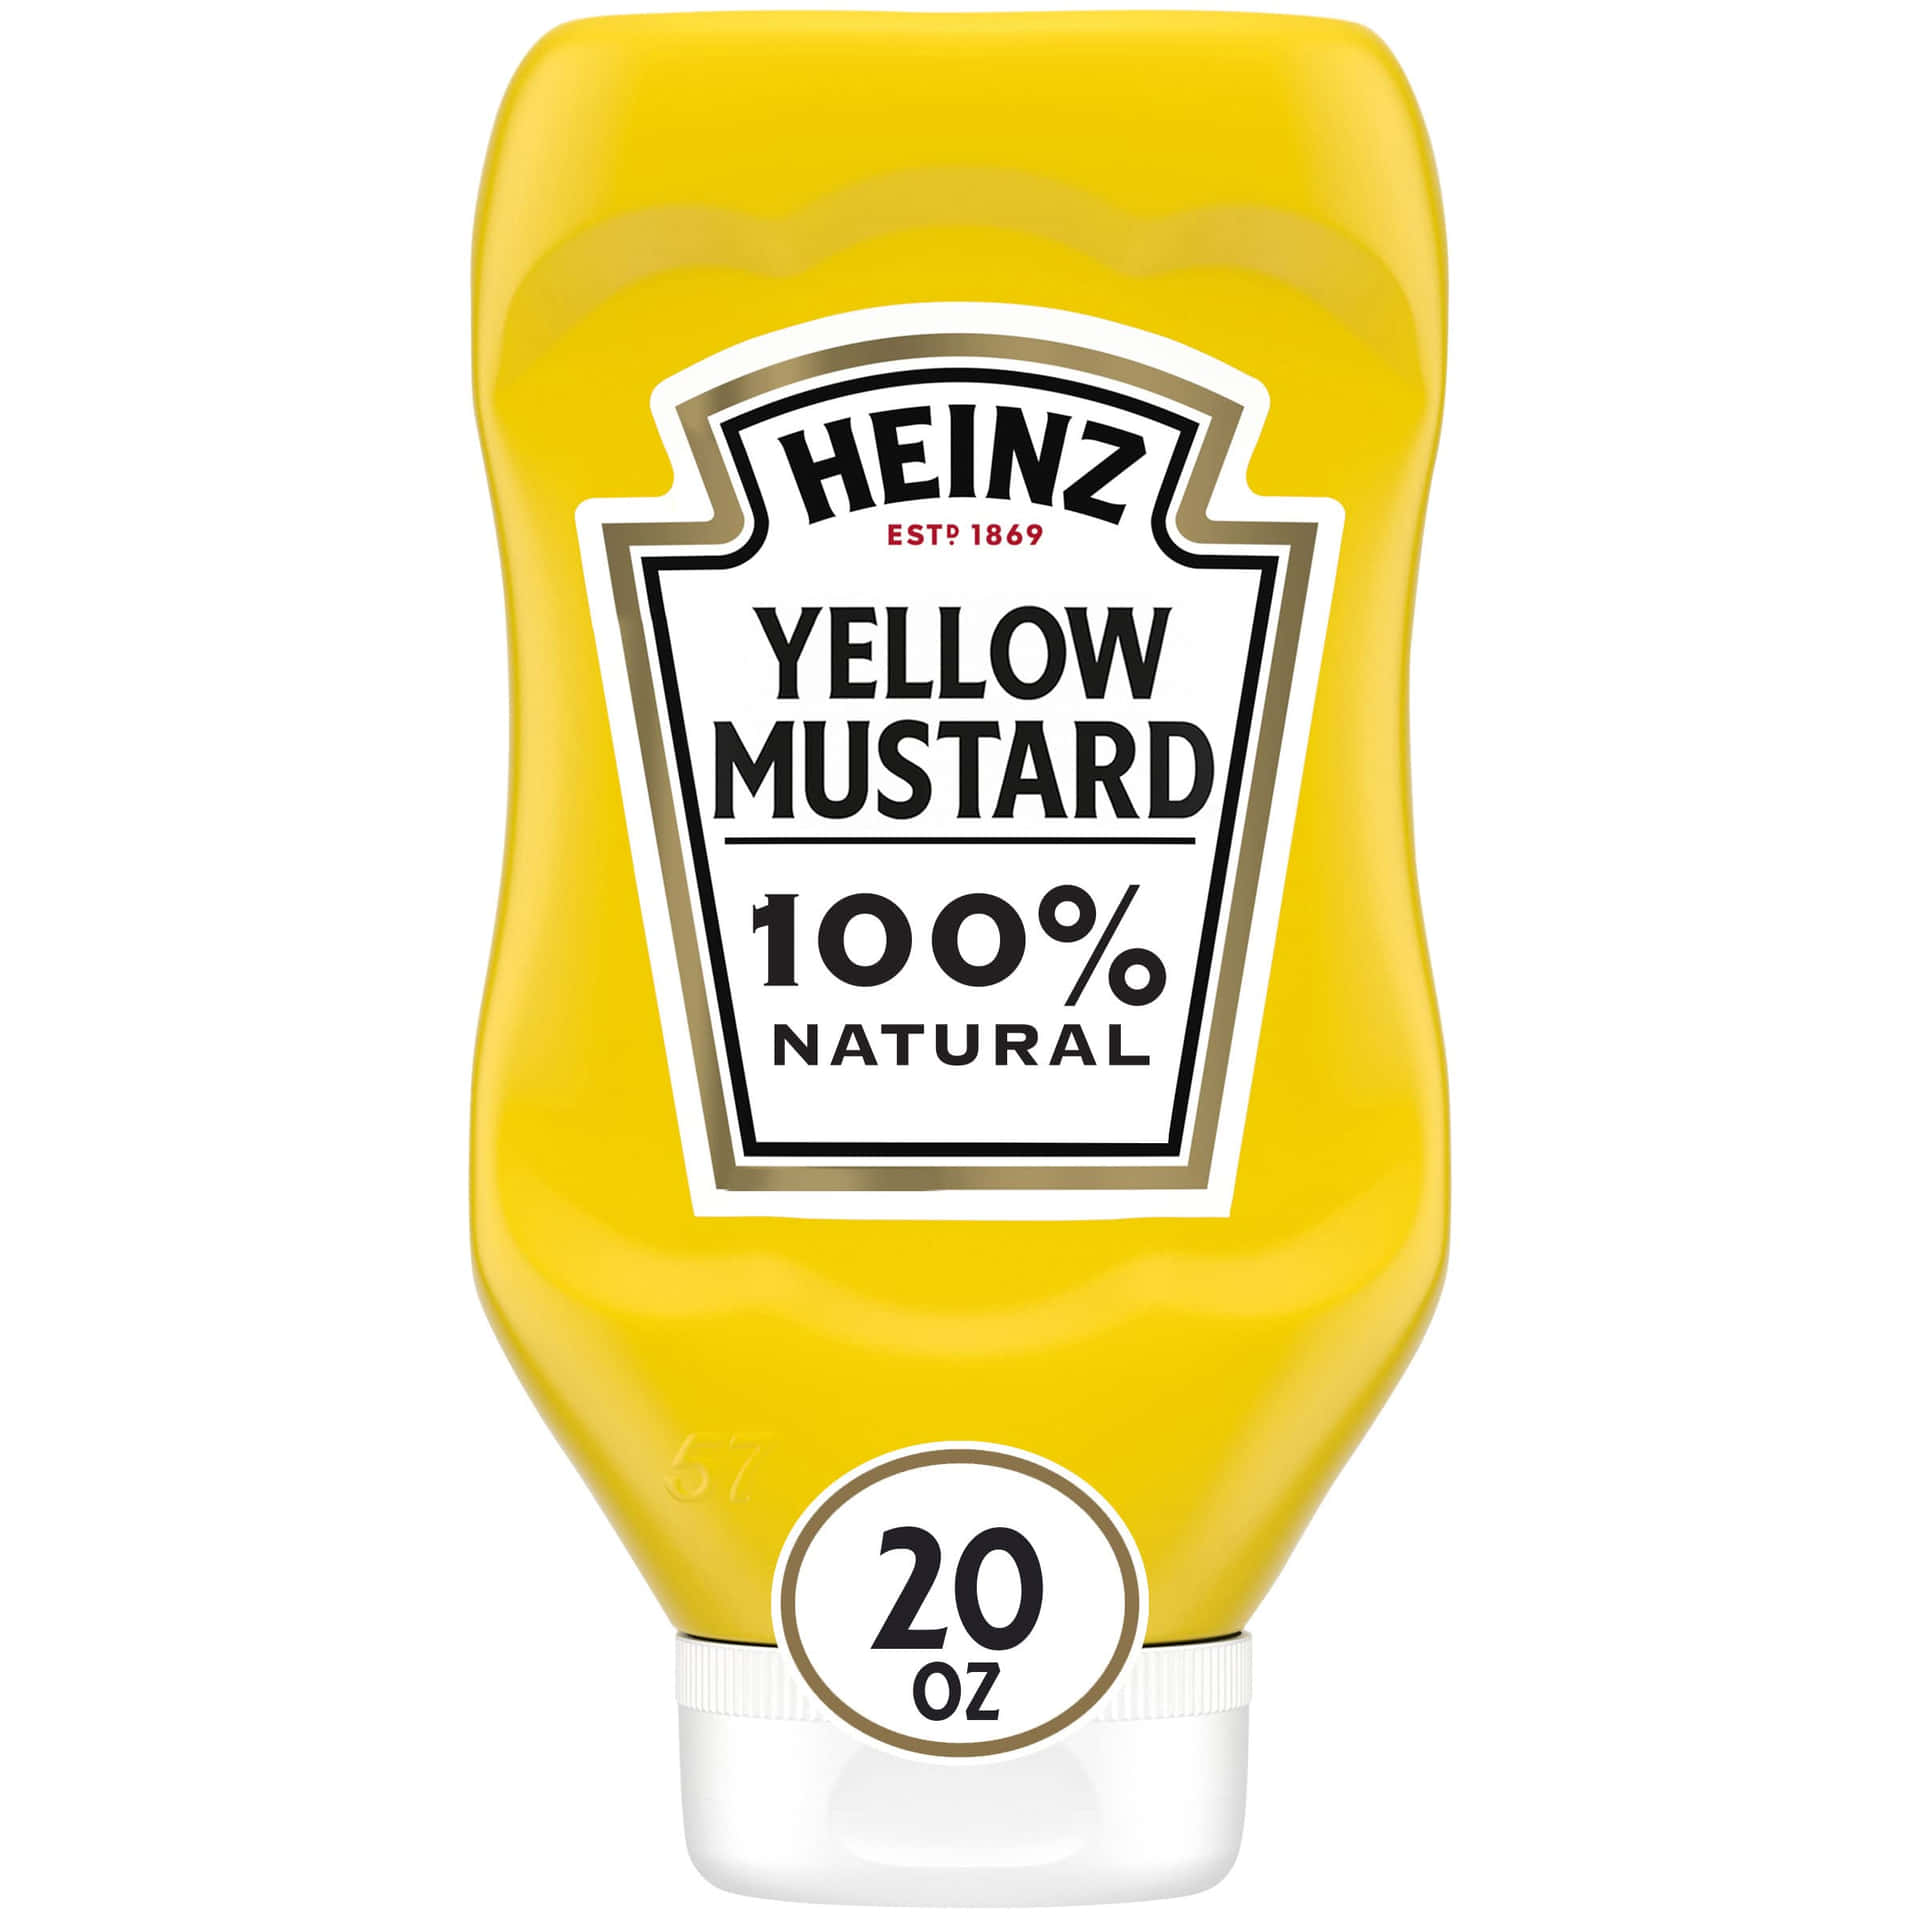 Heinz Yellow Mustard Bottle100 Percent Natural Wallpaper